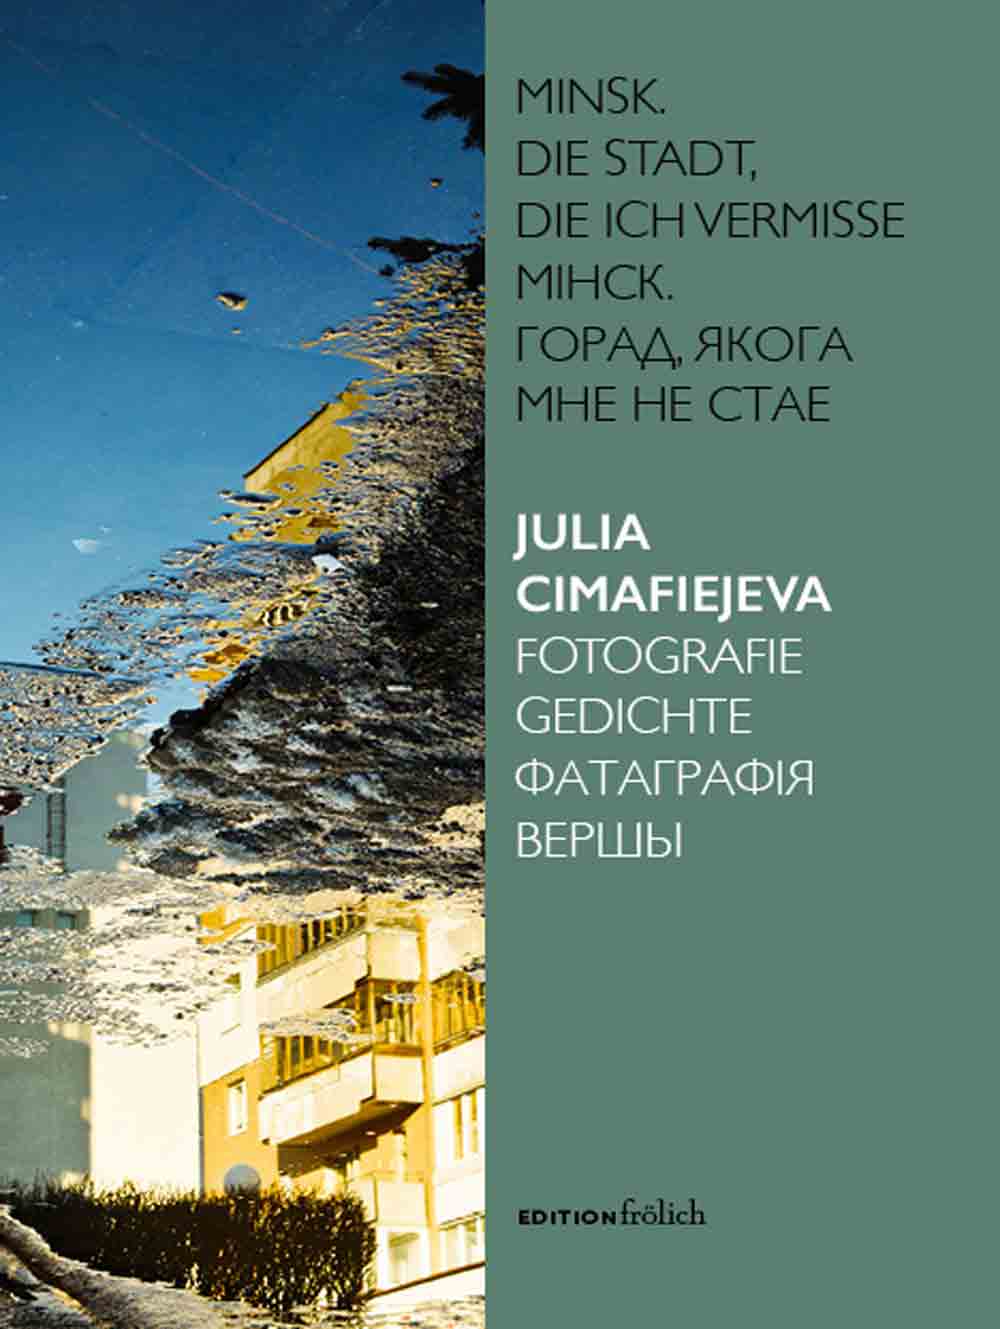 Lesetipps für Gütersloh, Julia Cimafiejeva, Minsk, die Stadt, die ich vermisse, Fotografie, Gedichte